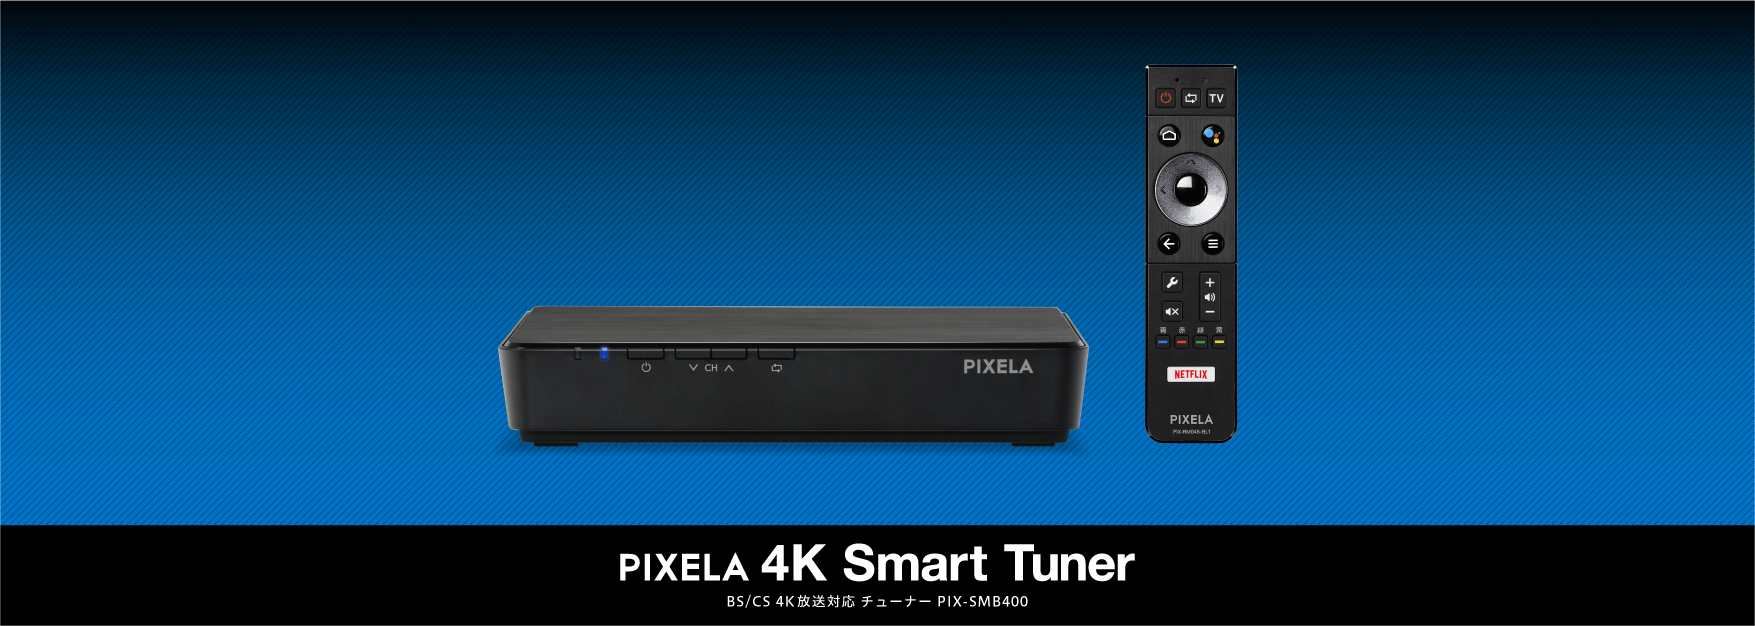 ピクセラ 4K Smart Tuner BS/CS 4K放送対応チューナー | kensysgas.com